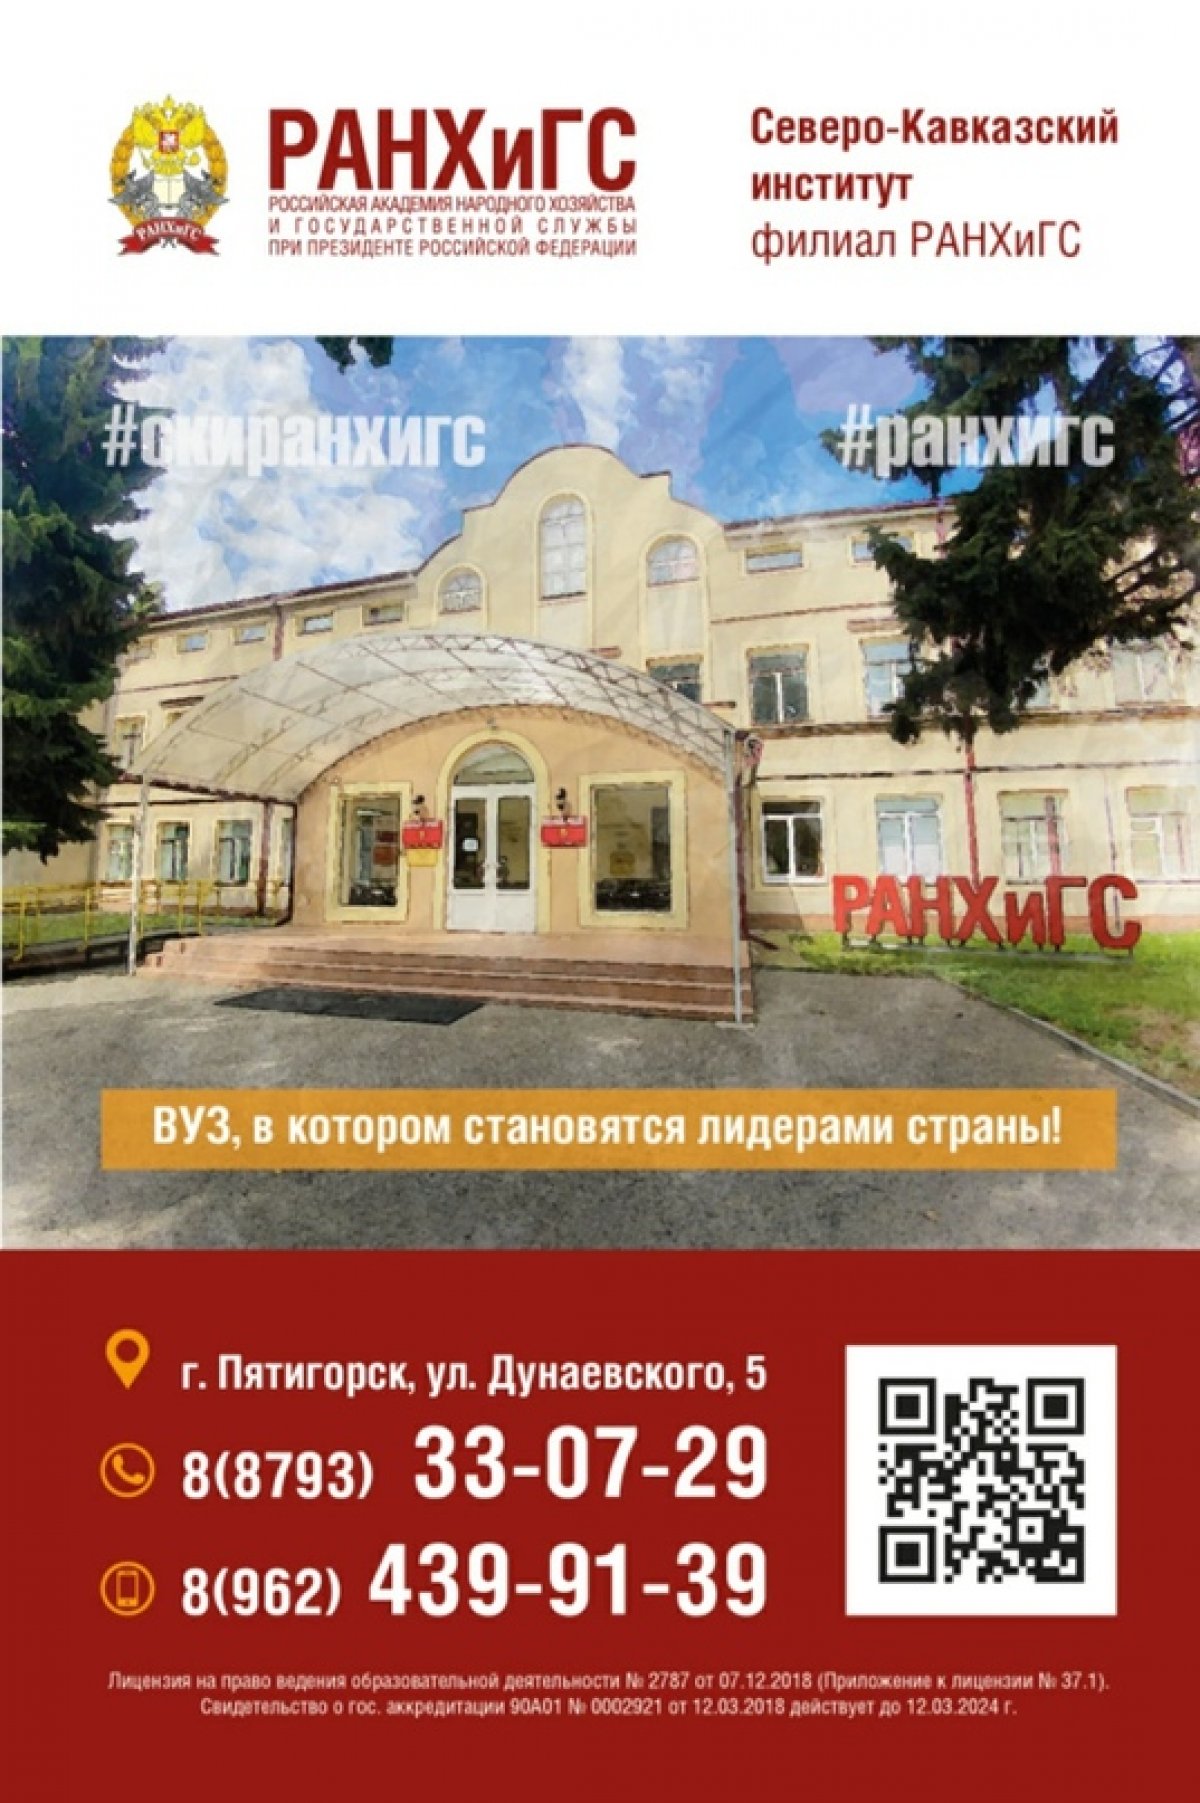 Северо-Кавказский институт РАНХиГС планирует начать новый учебный год в очном формате